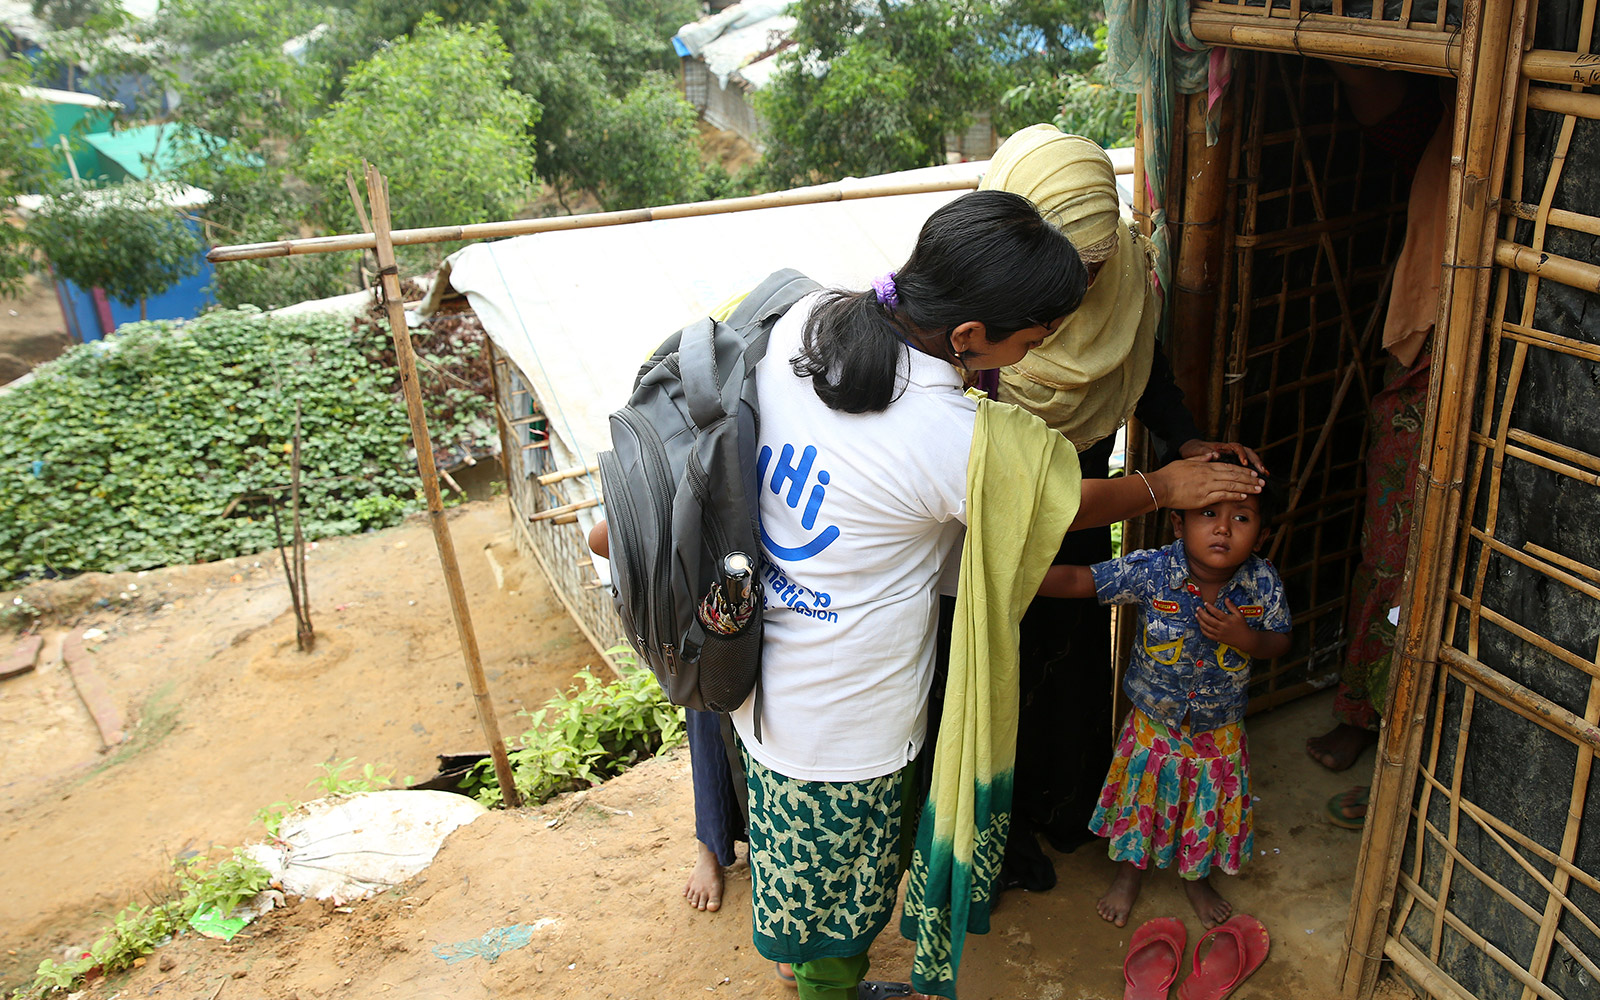 Bangladesh, HI mène une intervention d'urgence dans les camps de réfugiés Rohingyas. Les équipes mobiles identifient les personnes blessées et proposent des soins de réadaptation.